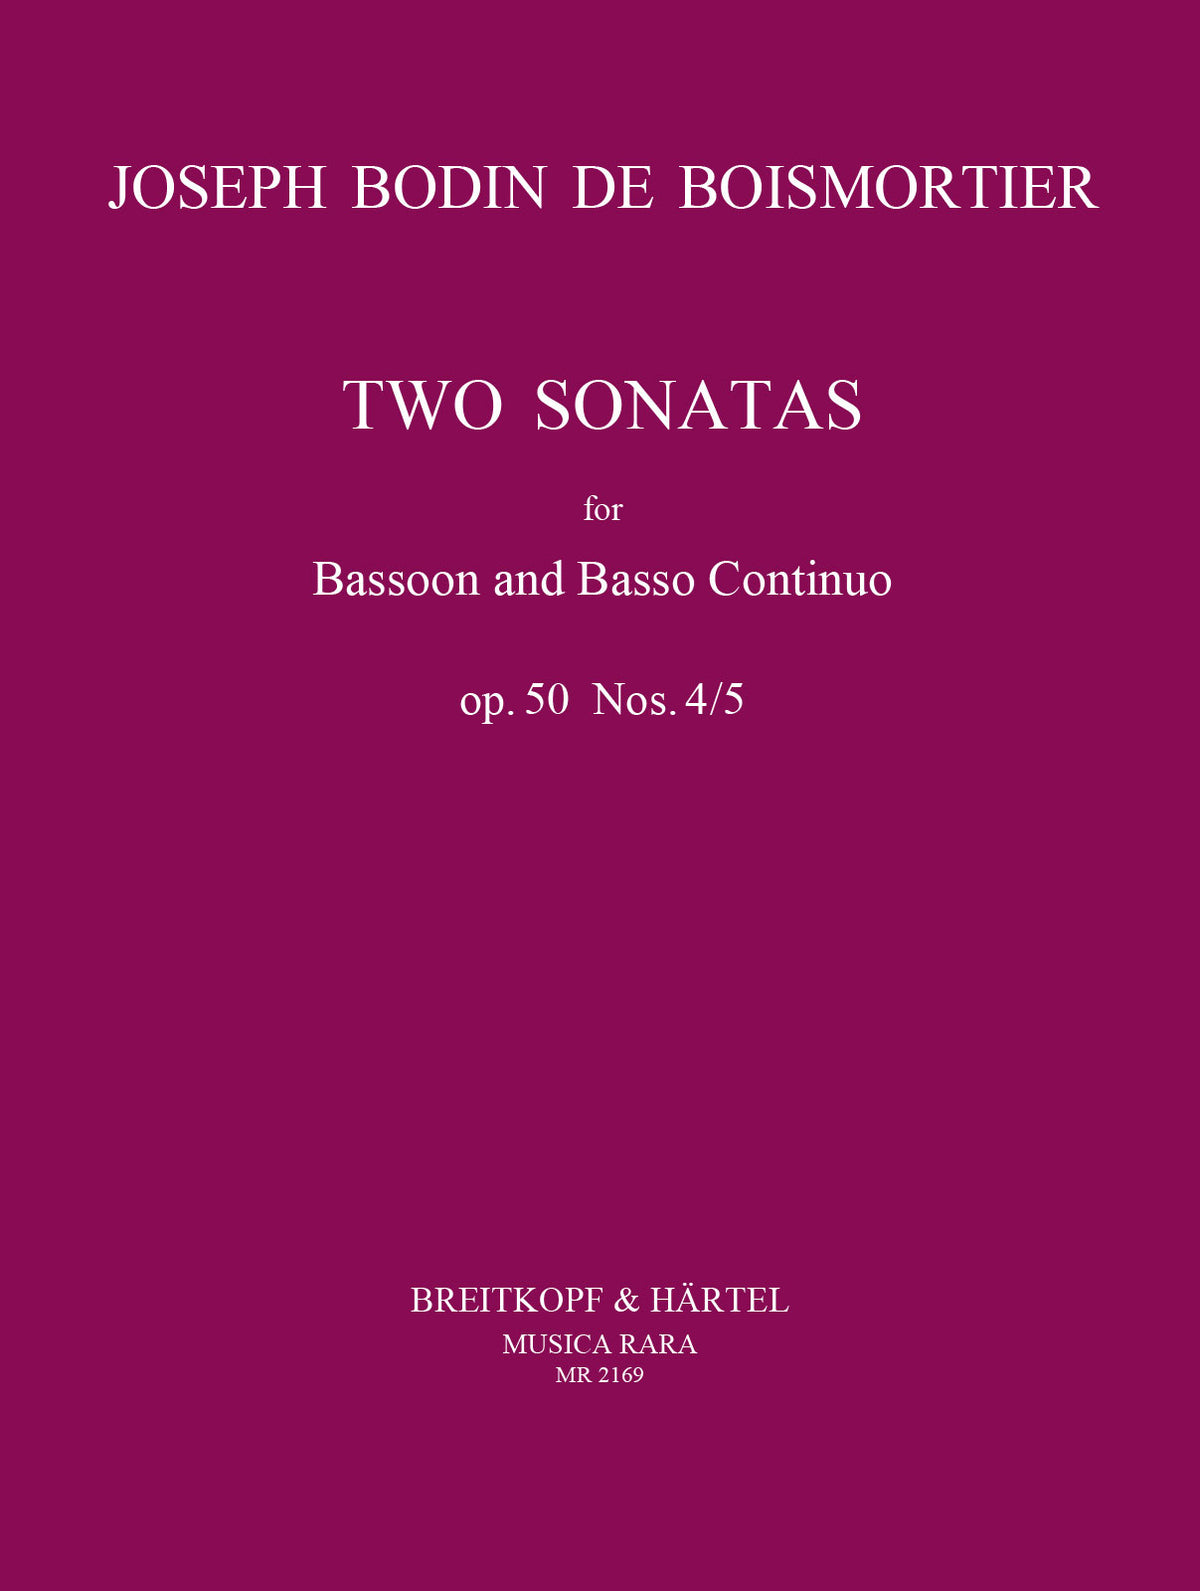 Boismortier Sonatas 4/5 Op 50